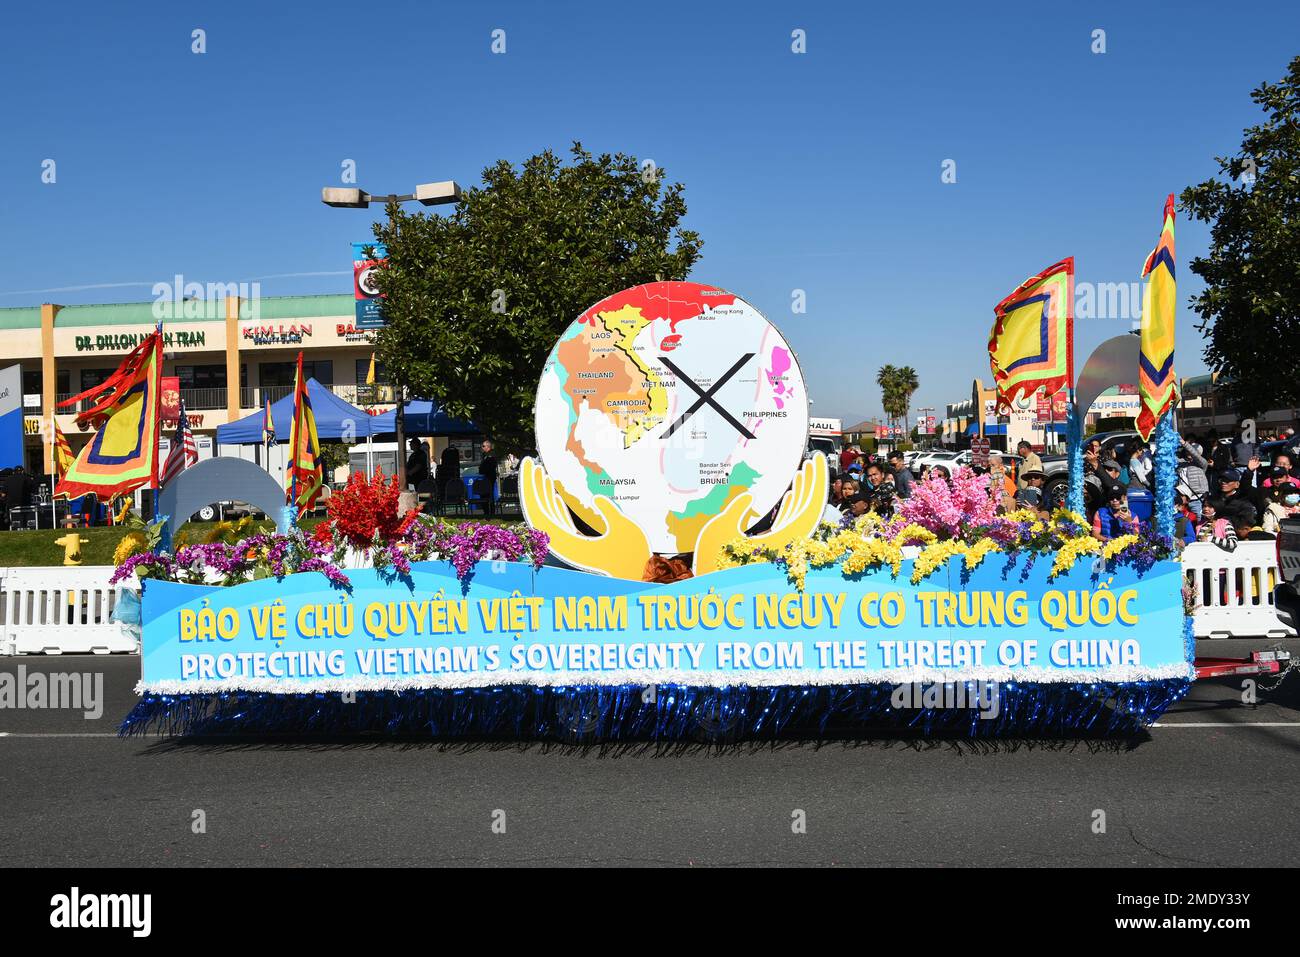 WESTMINSTER, CALIFORNIA - 22 ENE 2023: Protegiendo la soberanía de los vietnamitas de la amenaza de China flotan en el Desfile del Tet celebrando el Año del C. Foto de stock